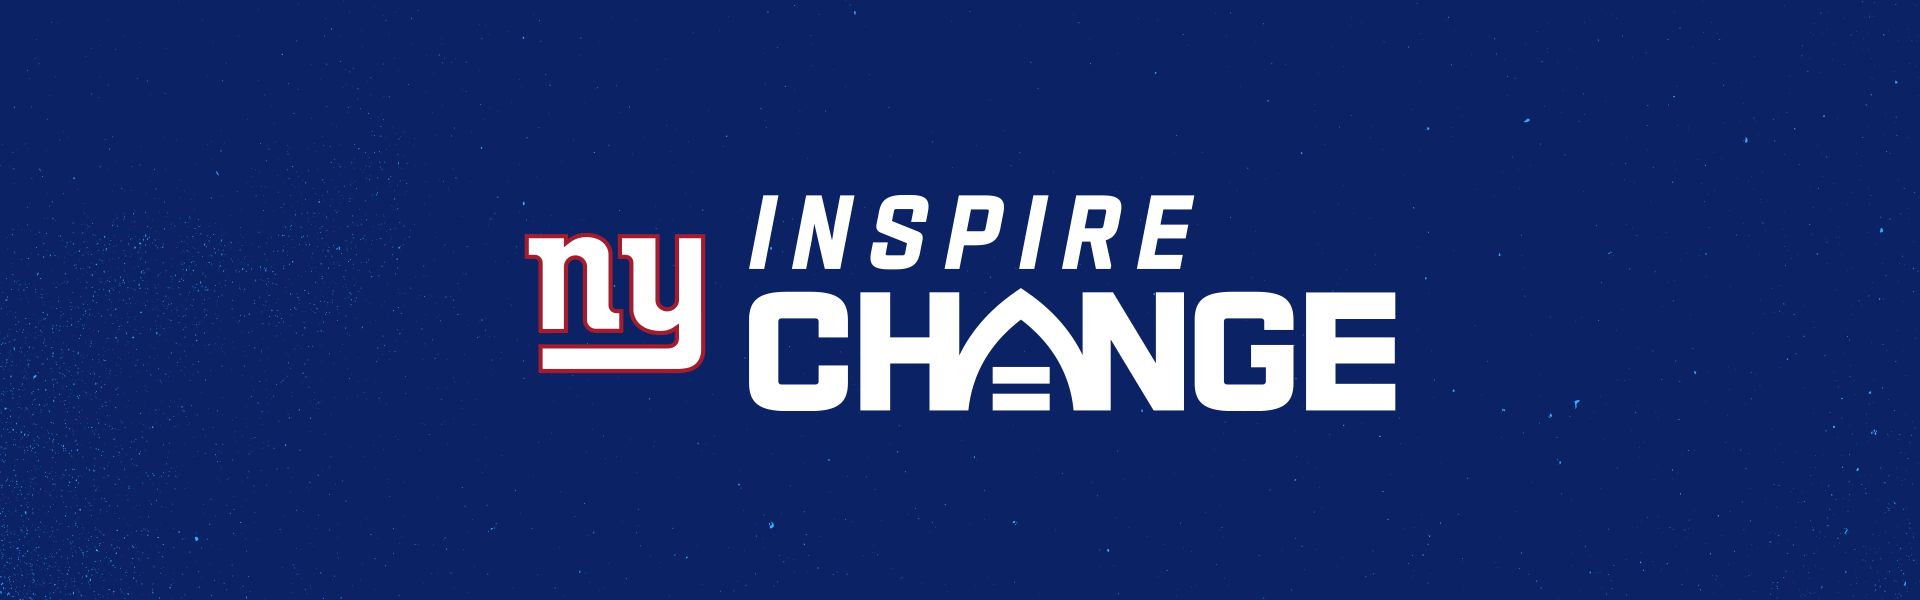 Giants Inspire Change  New York Giants 